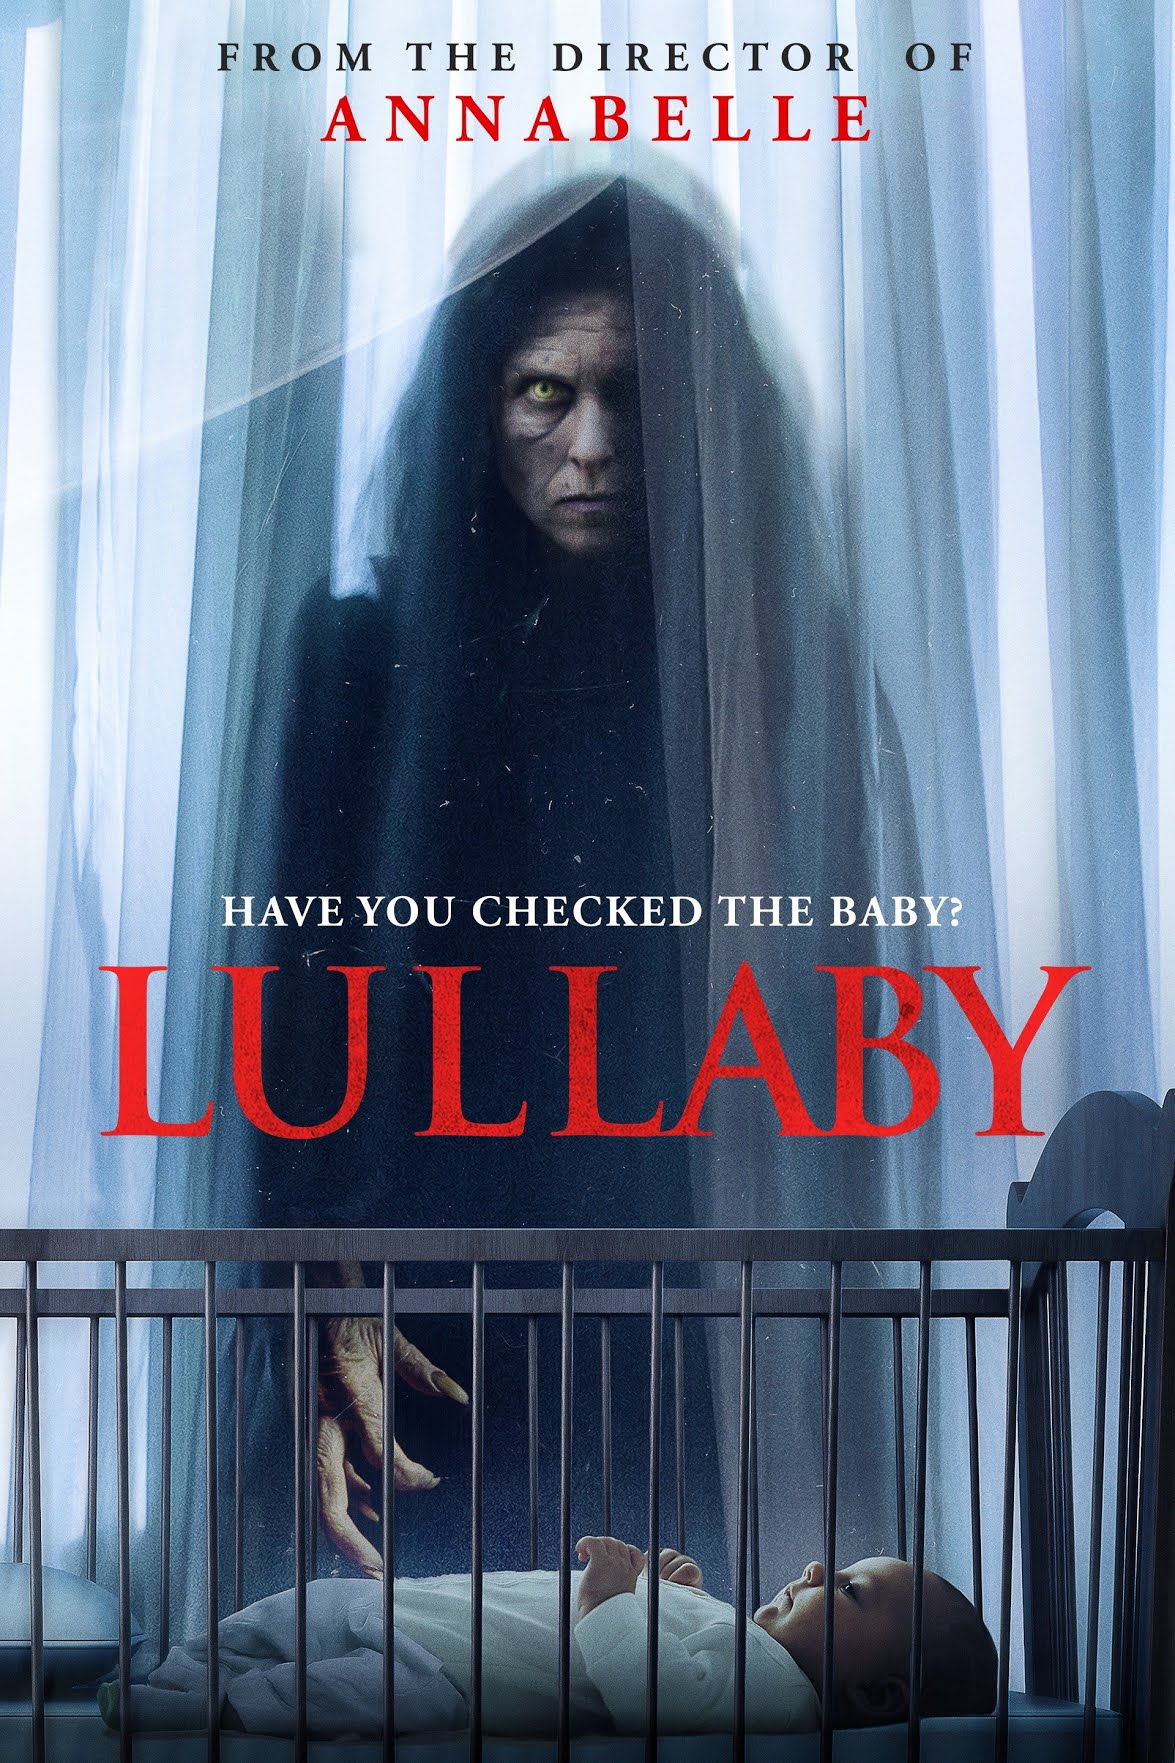 [ฝรั่ง] Lullaby (2022) ลัลลาบาย [1080p] [พากย์อังกฤษ 5.1] [Soundtrack บรรยายไทย + อังกฤษ] [เสียงอังกฤษ + ซับไทย] [USERLOAD]